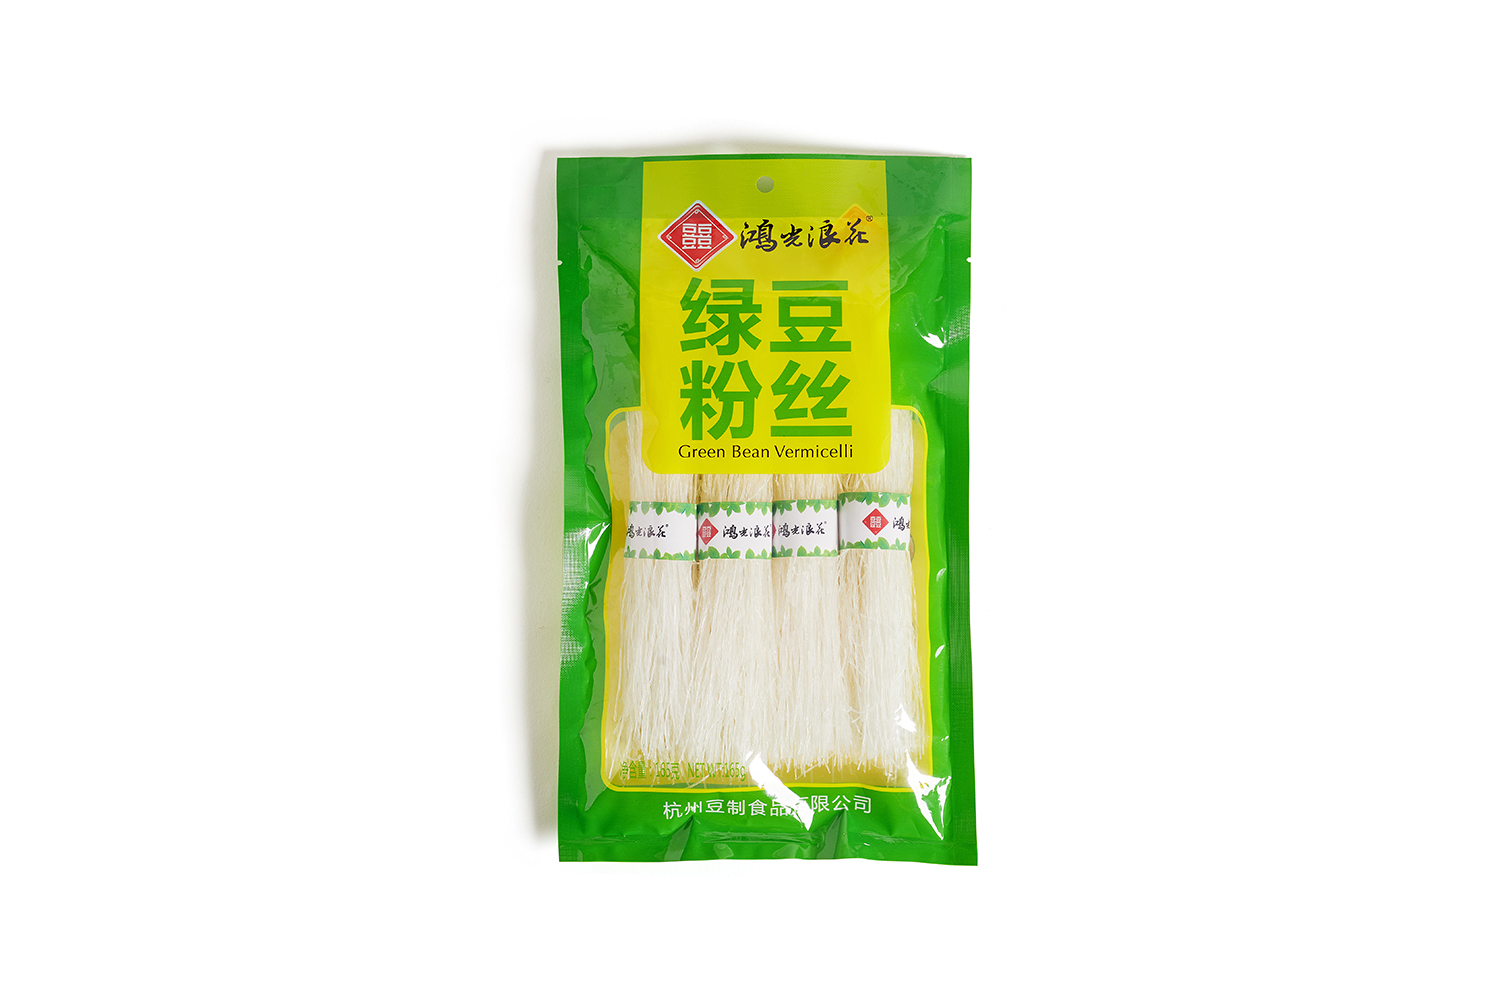 Hongguang mung bean vermicelli 165G